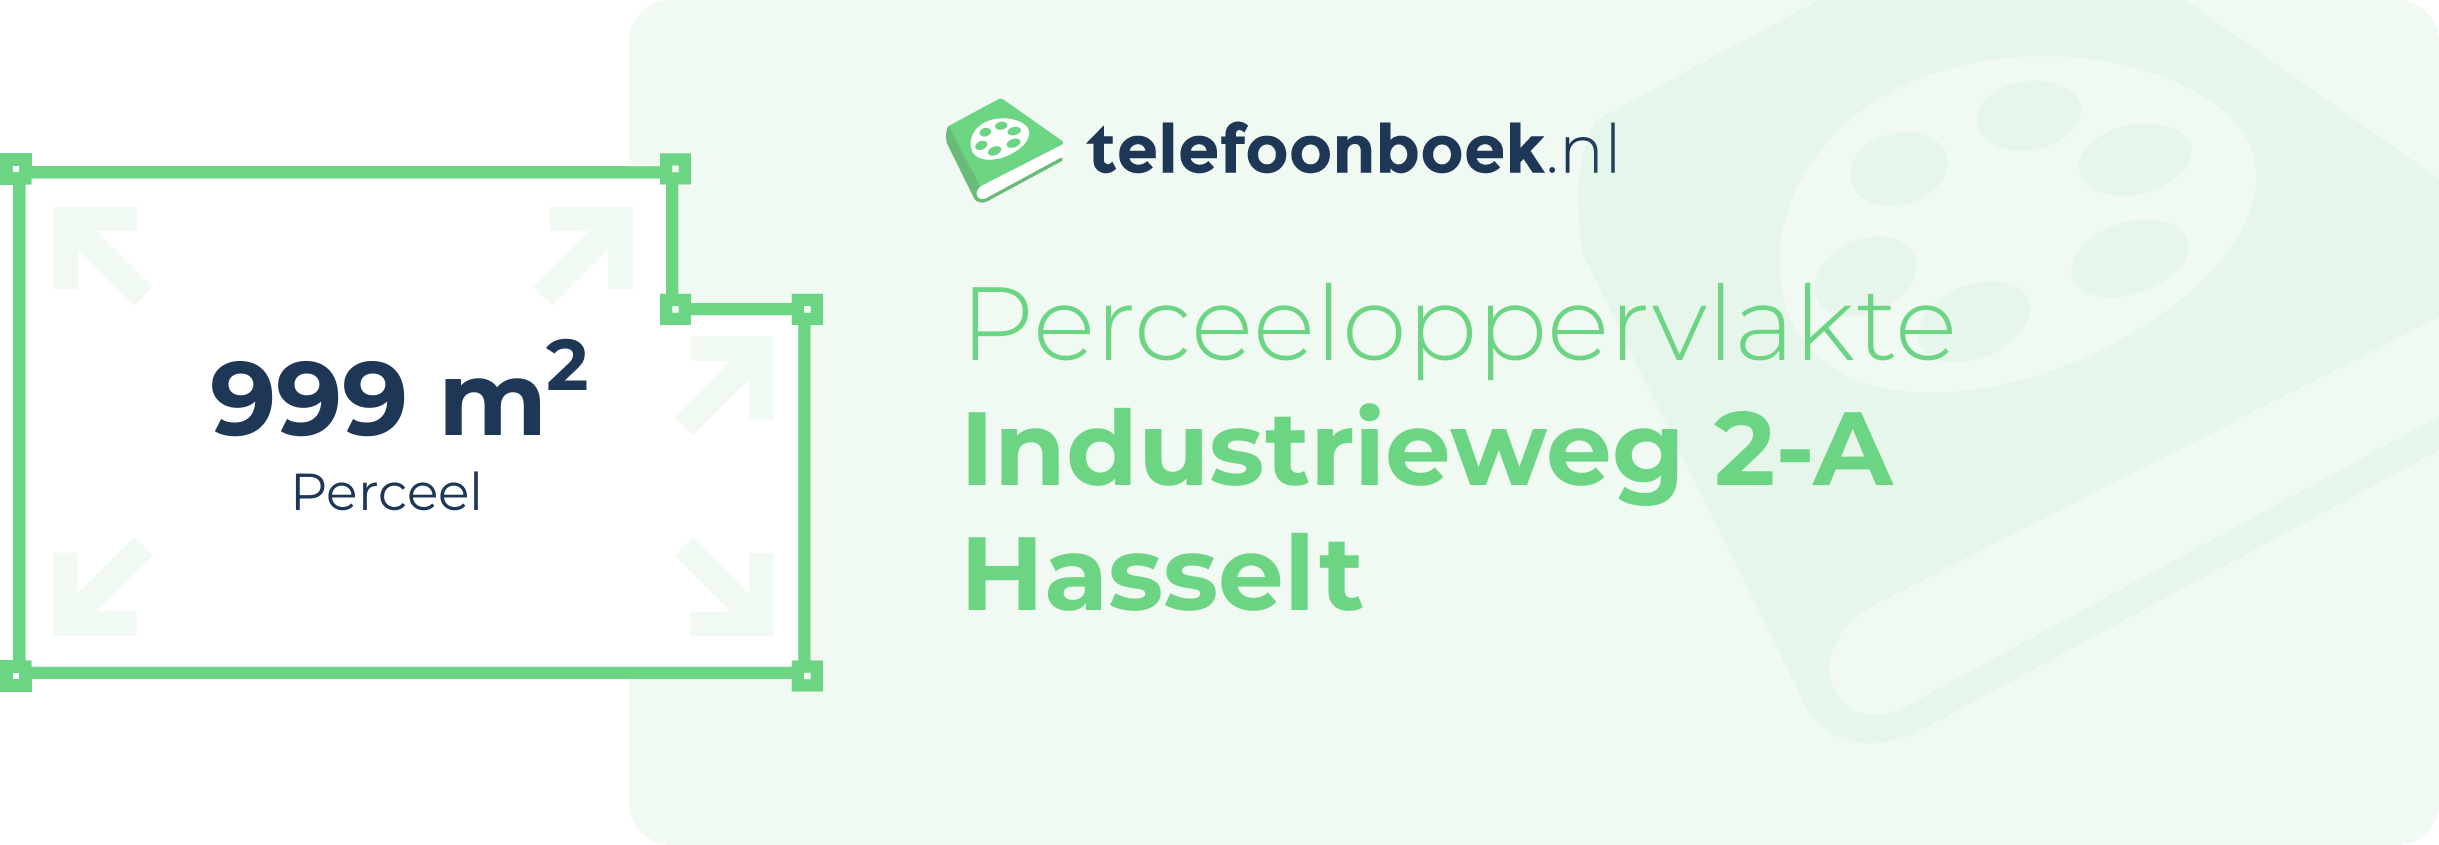 Perceeloppervlakte Industrieweg 2-A Hasselt